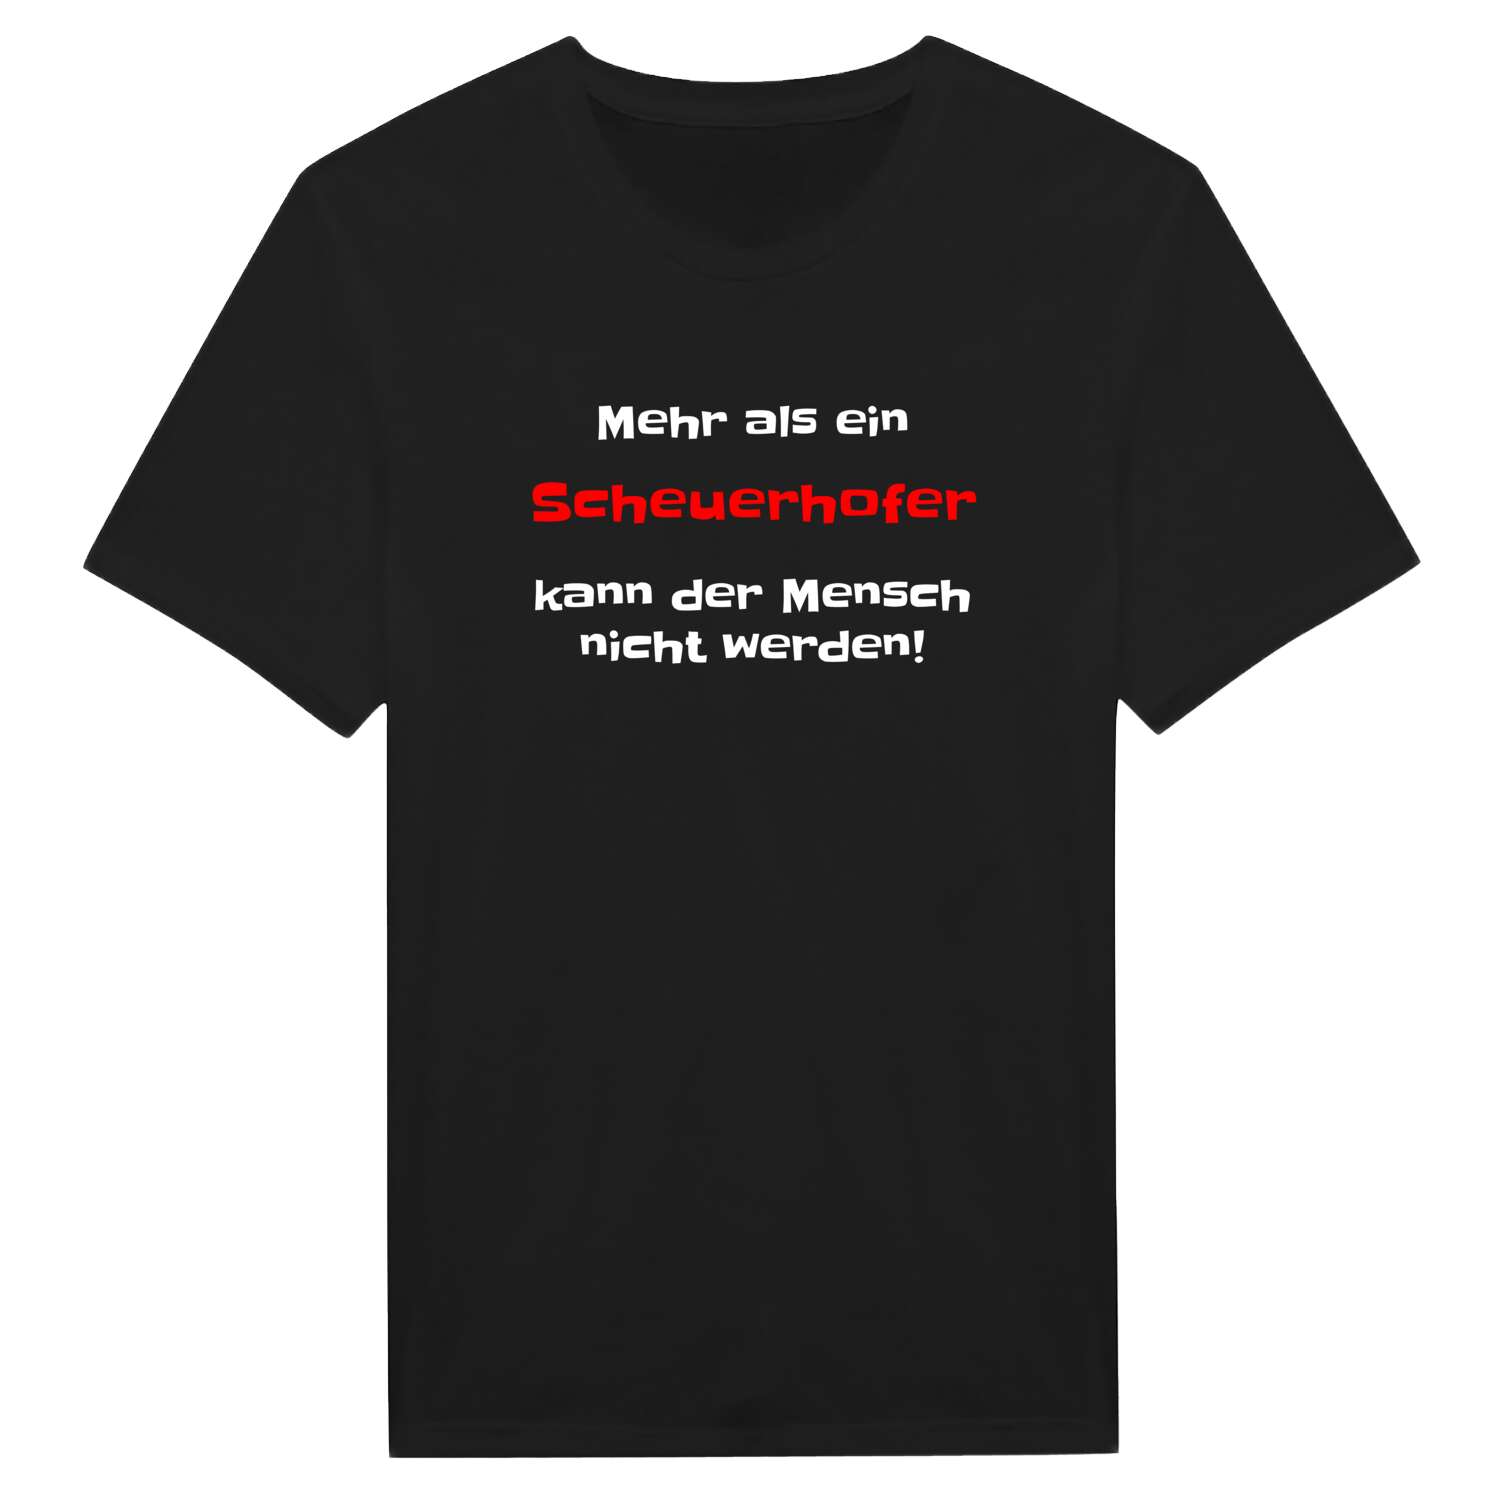 Scheuerhof T-Shirt »Mehr als ein«